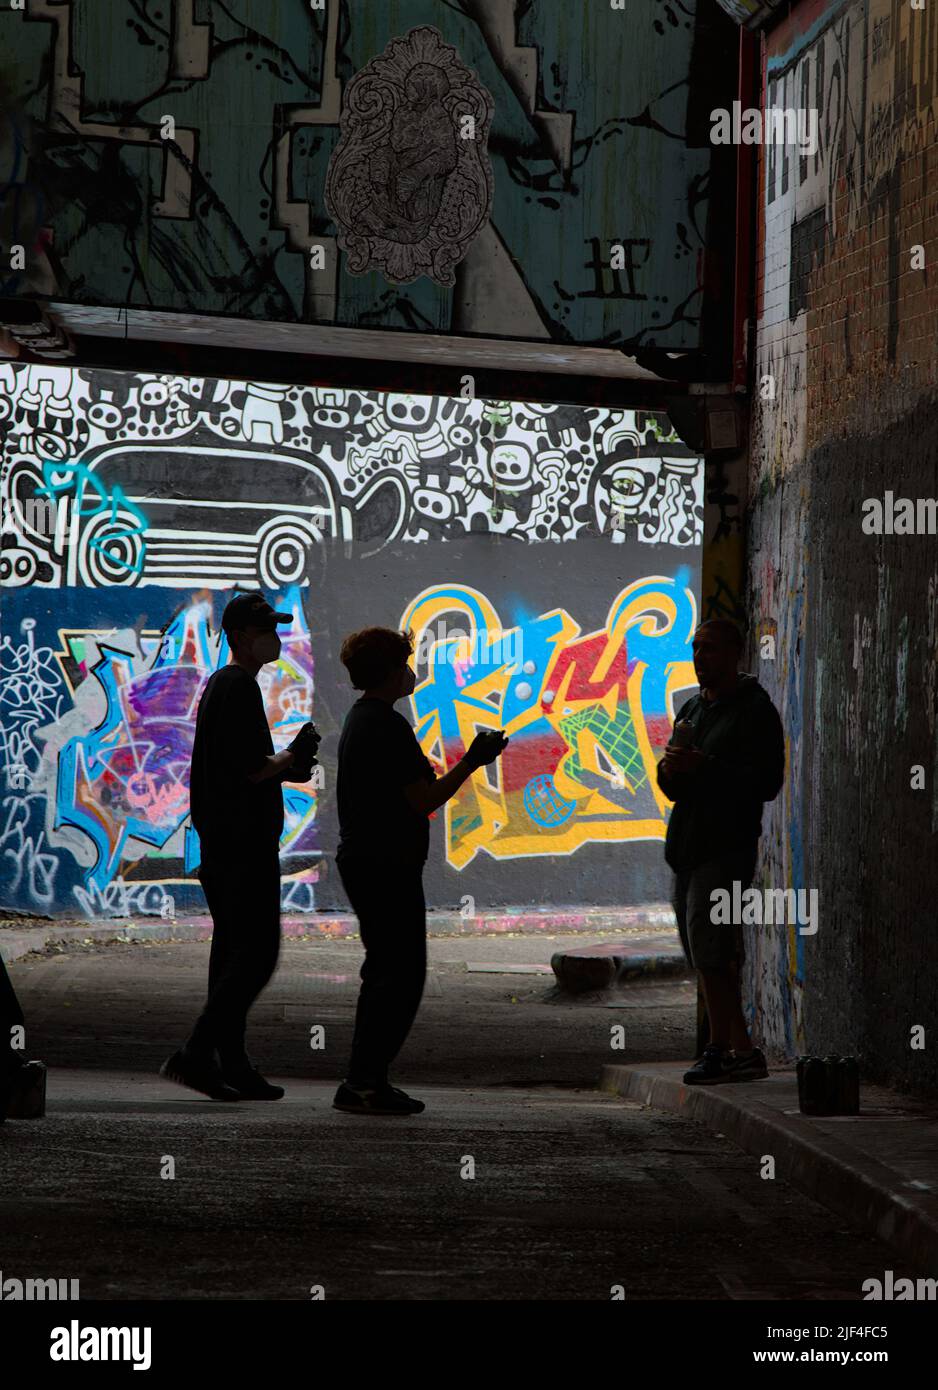 Silueta de los artistas de Graffiti con latas de spray bajo un puente en Un túnel cerca de la estación de Waterloo, Londres, Reino Unido Foto de stock